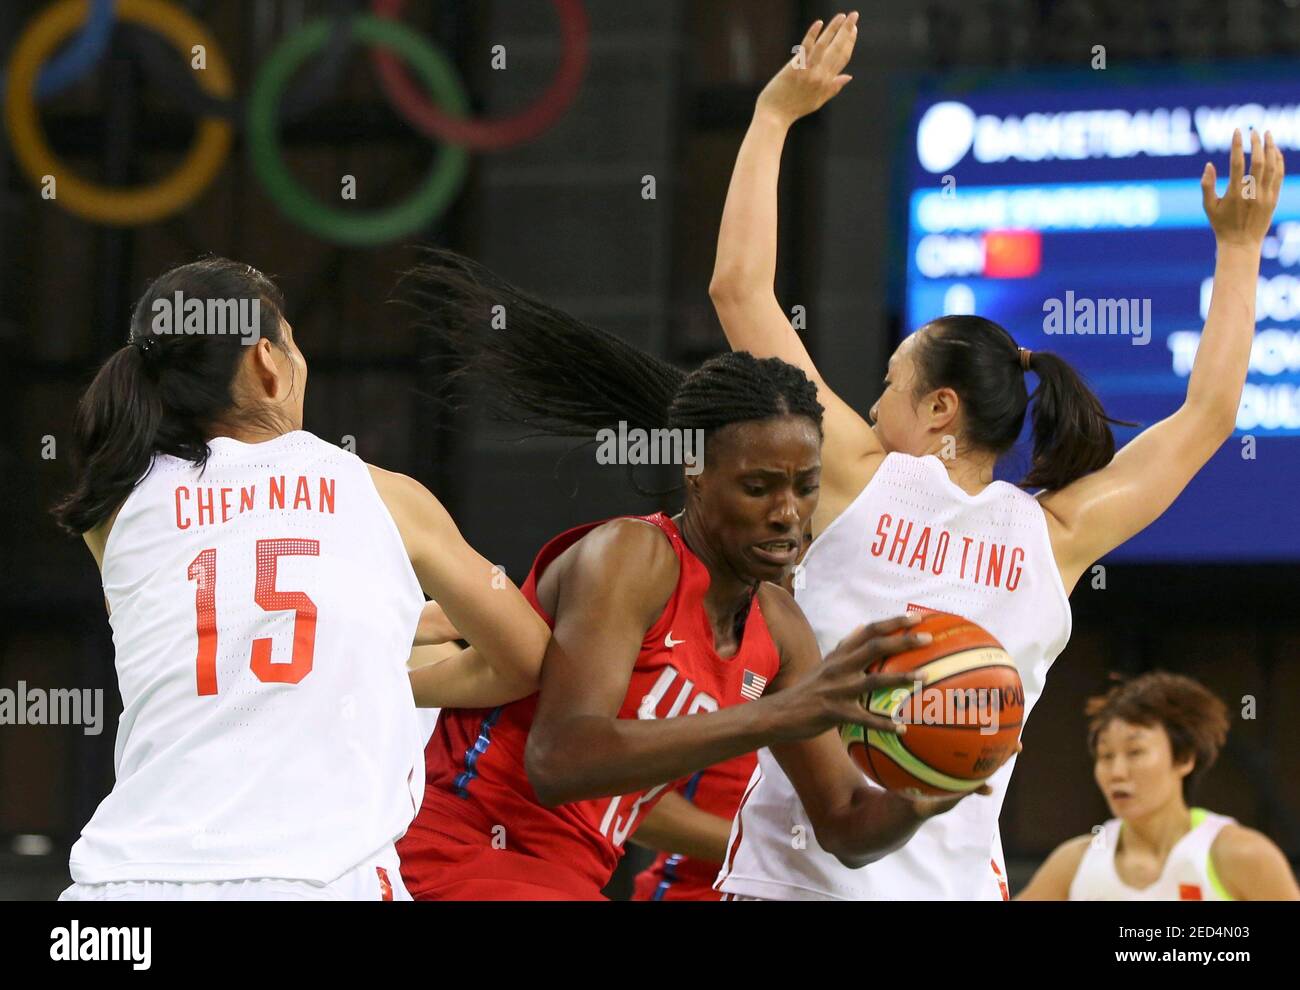 Olympische Spiele 2016 in Rio - Basketball - Vorrunde für Frauen Gruppe B  China / USA - Jugendarena - Rio de Janeiro, Brasilien - 14/08/2016. Nan  Chen (CHN) aus China, Sylvia Fowles (